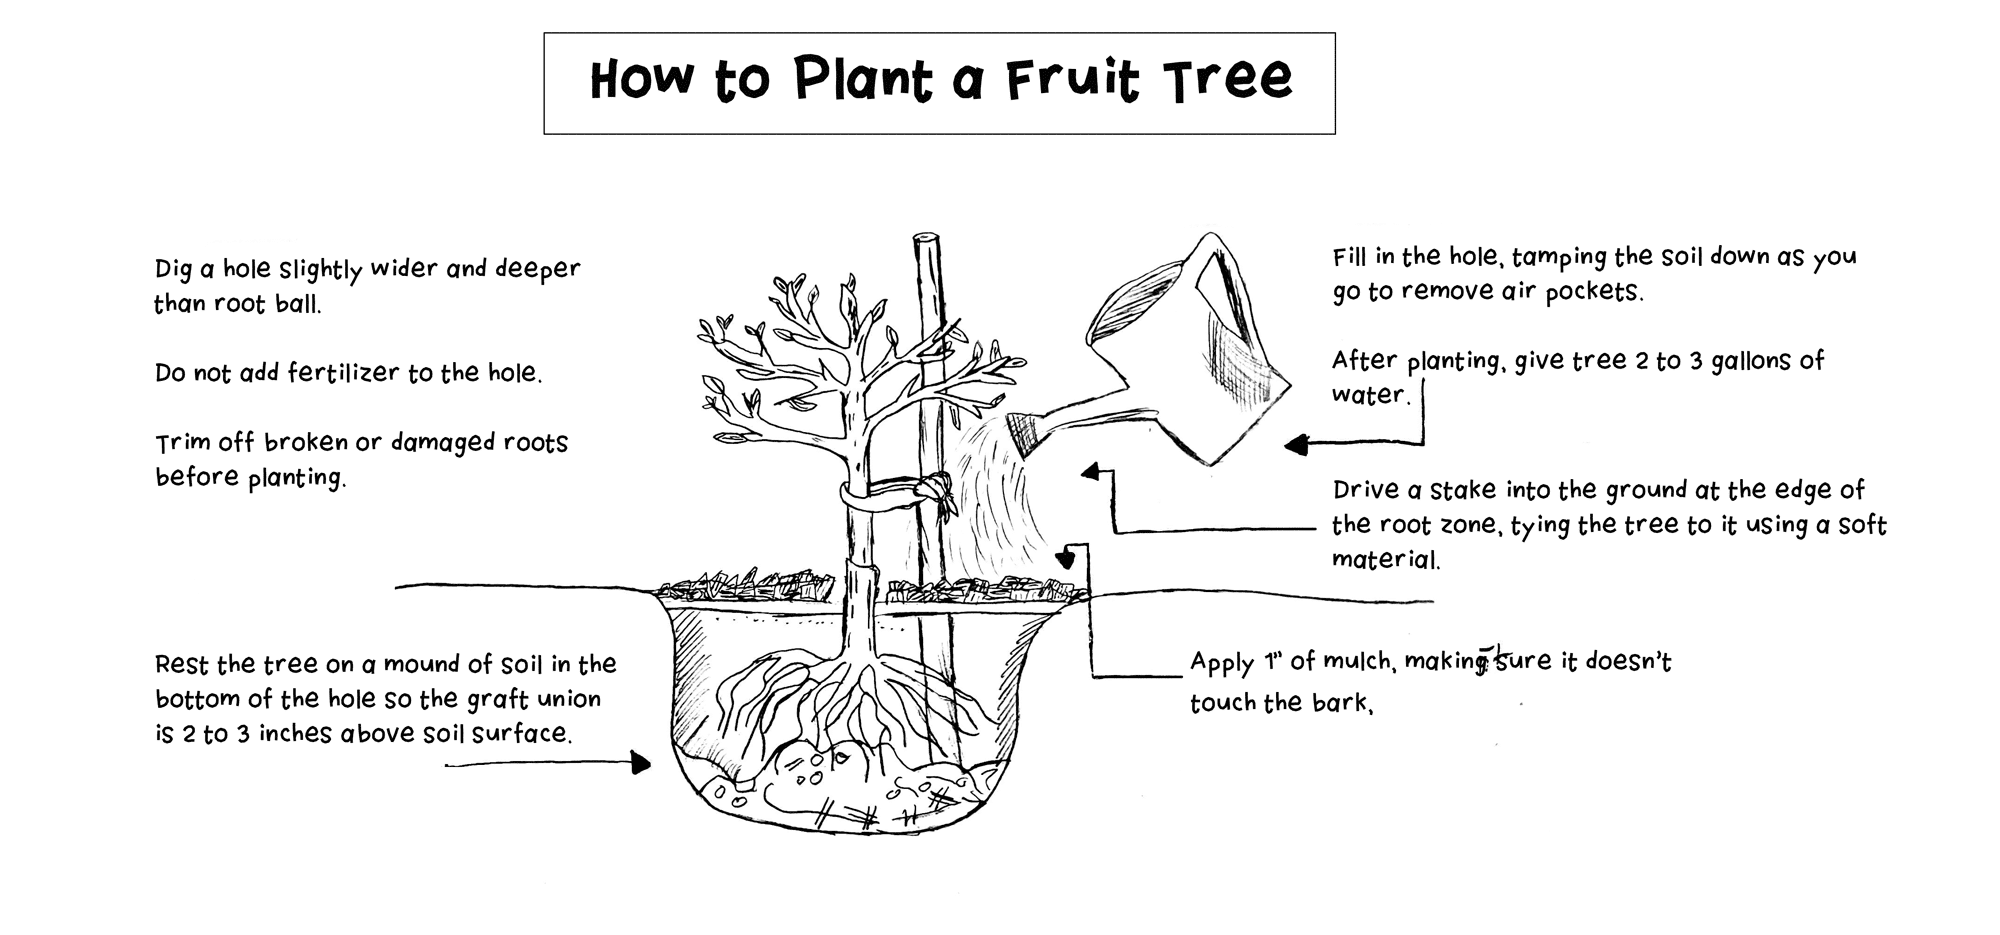 تخطيط شجرة الفاكهة